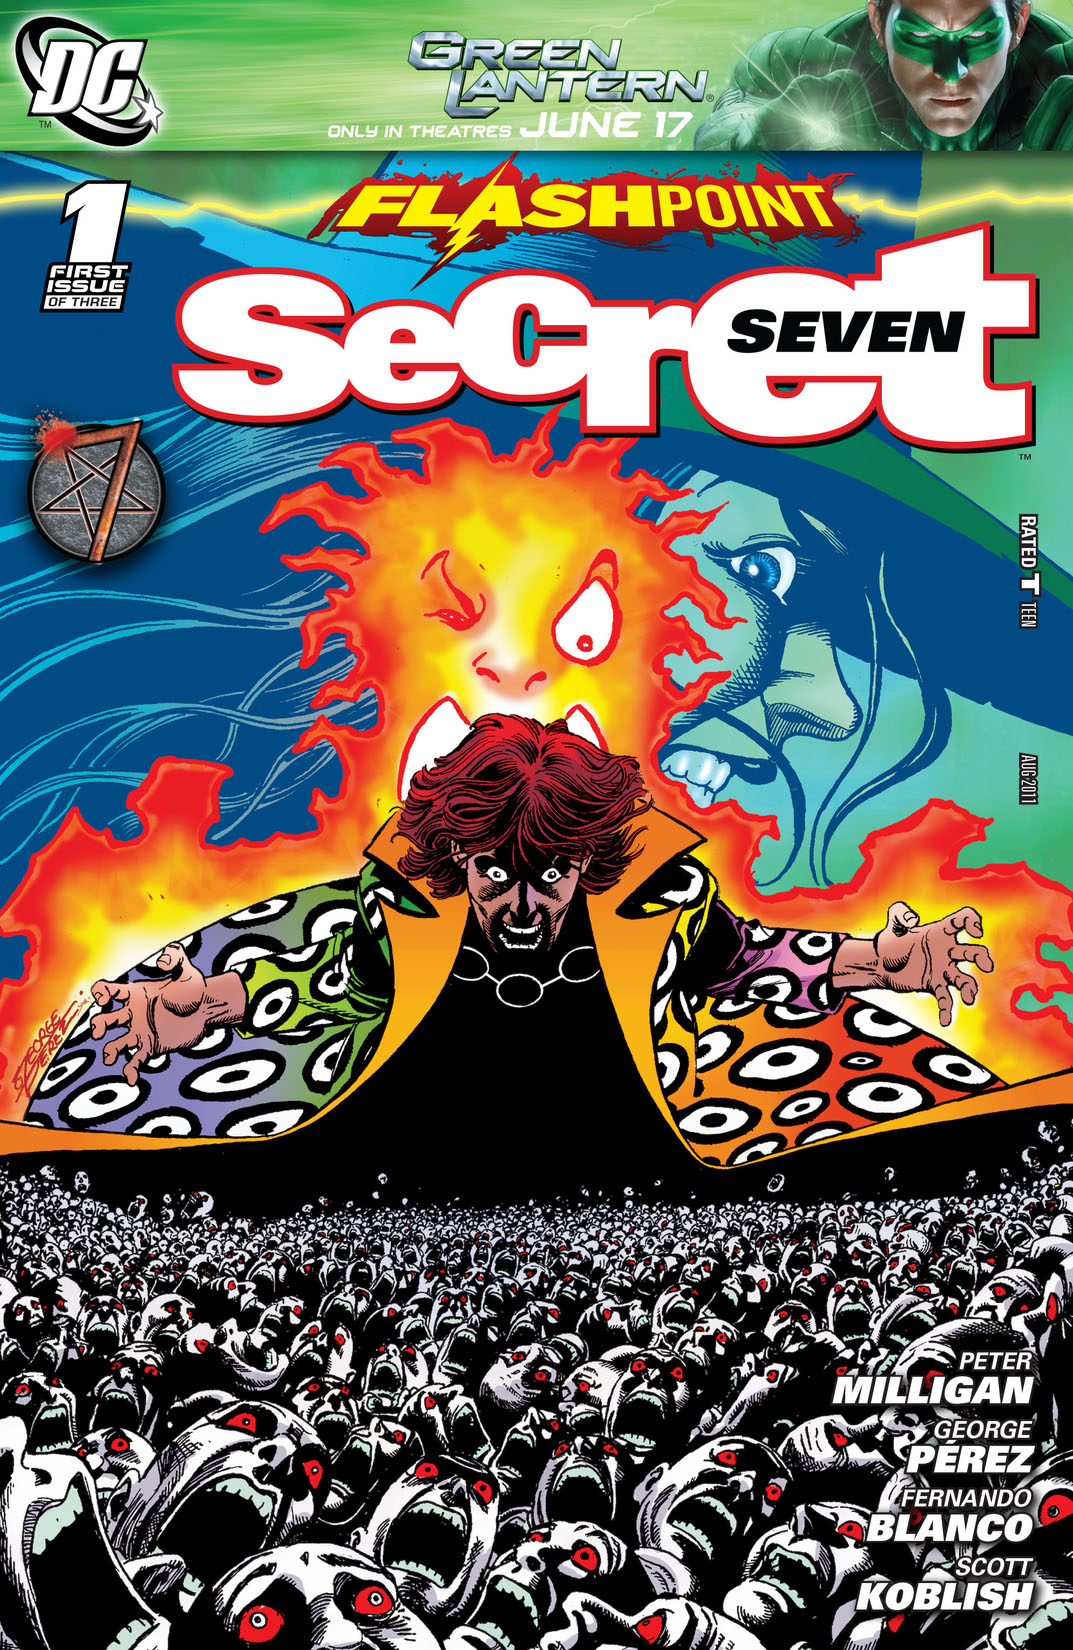 Flashpoint: Secret Seven #1 preview images